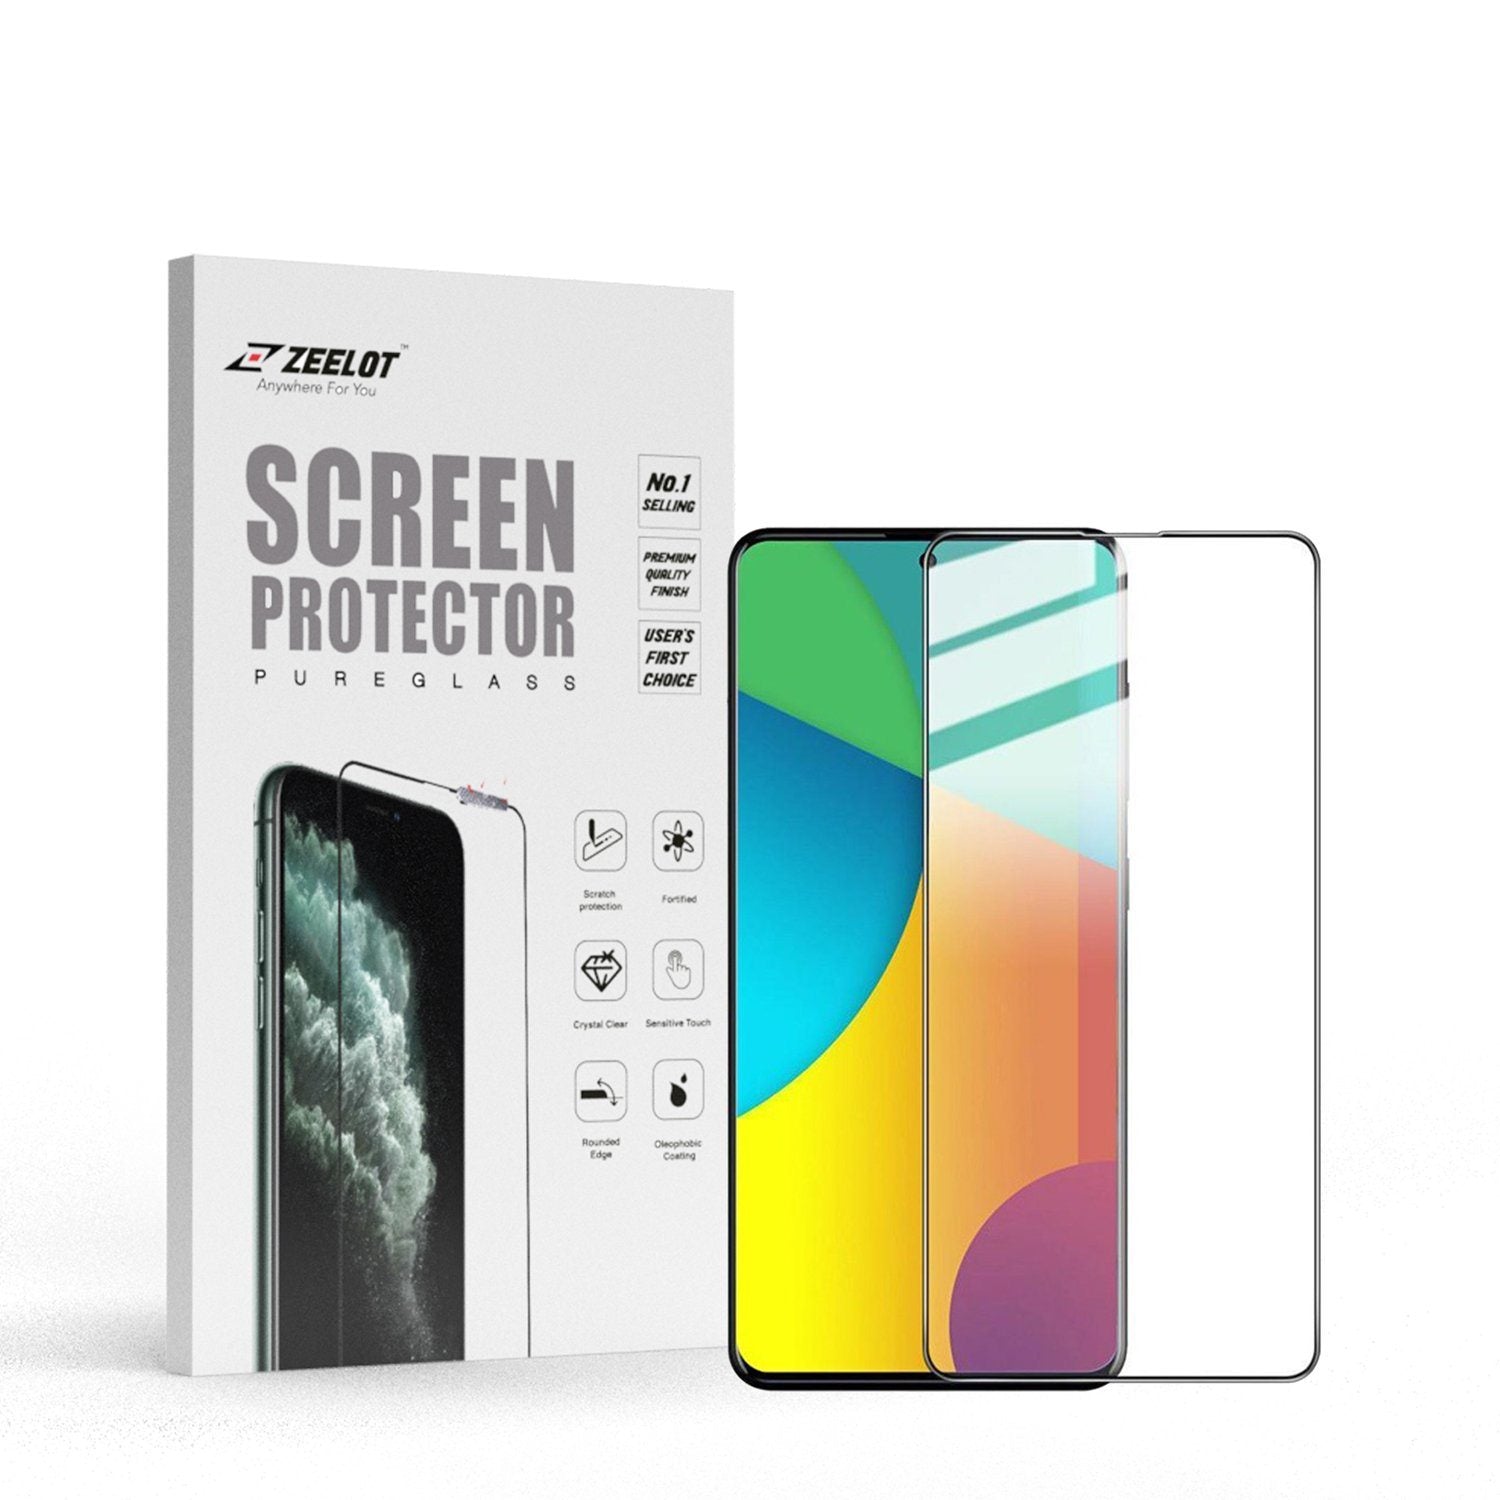 ZEELOT PureGlass 2.5D Tempered Glass Screen Protector for Samsung Galaxy A71 (2020), Clear Default ZEELOT 